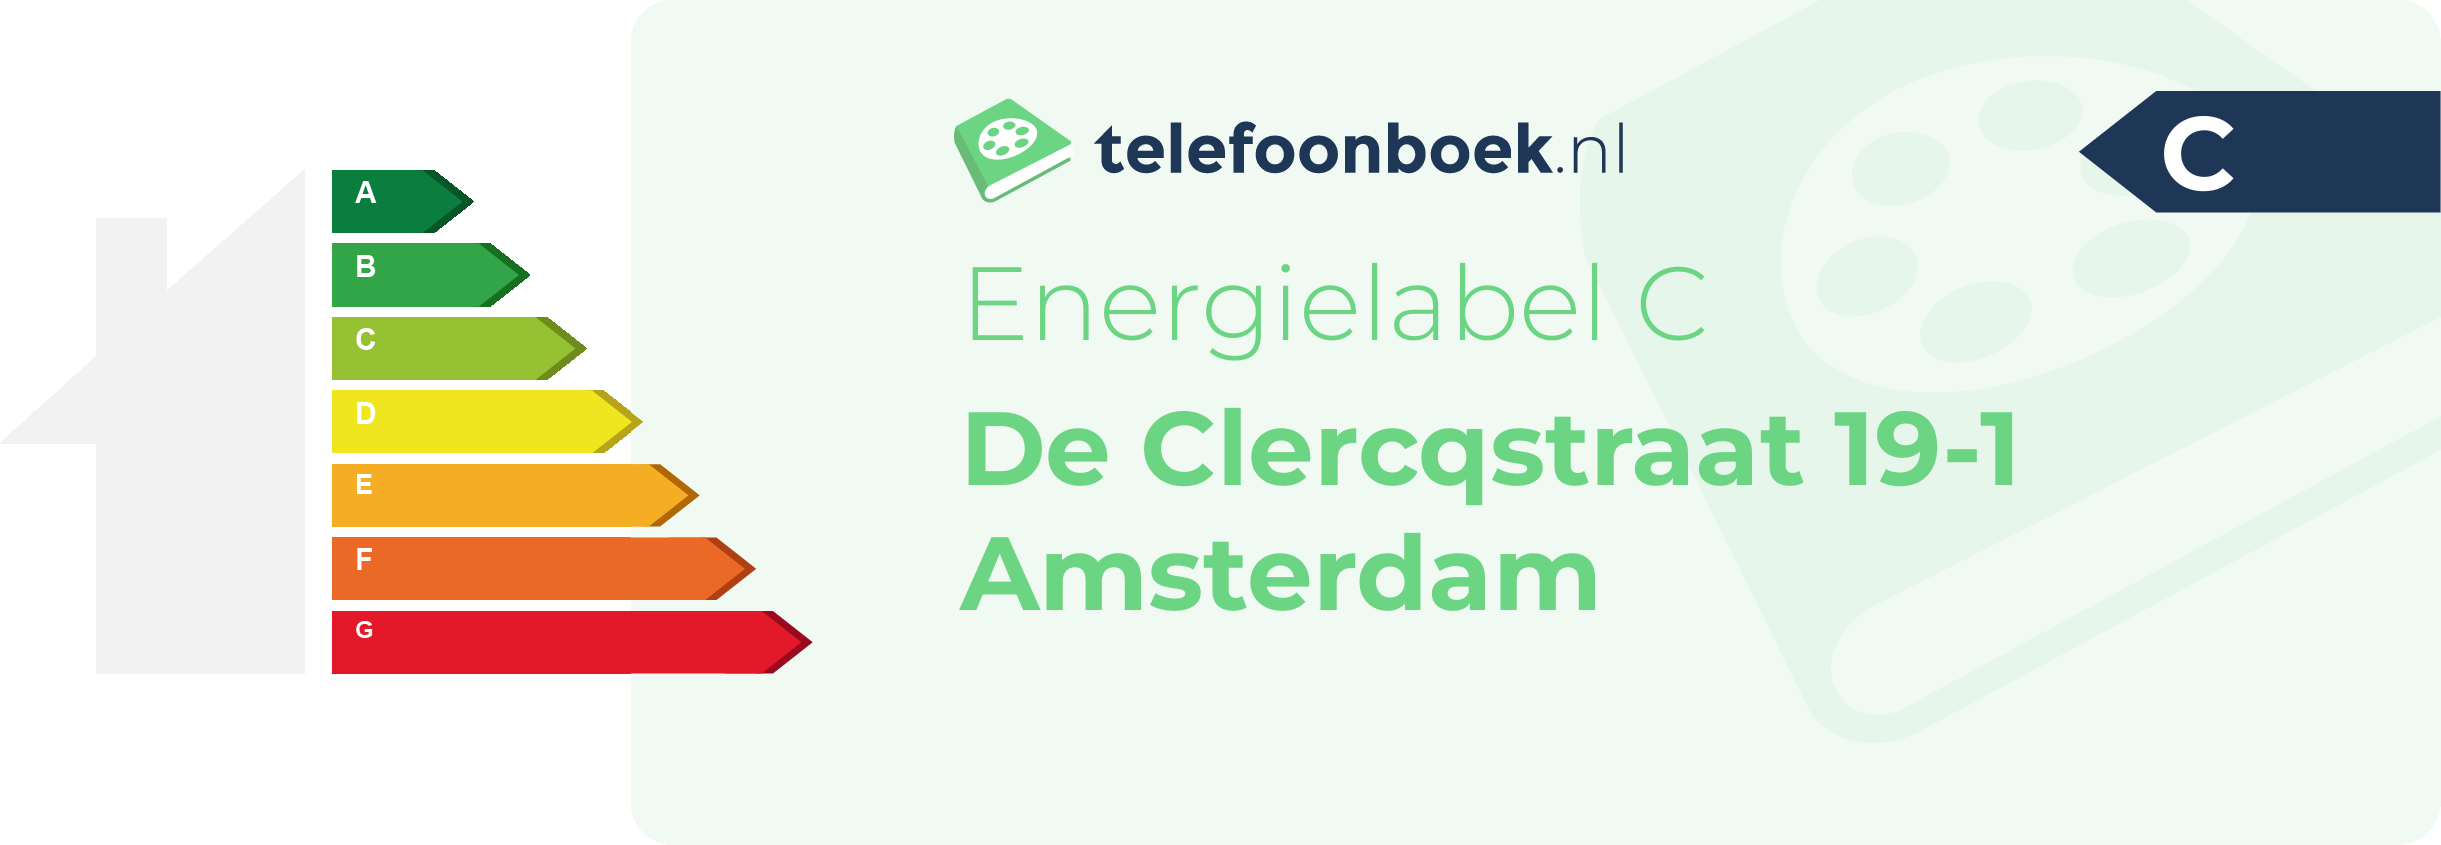 Energielabel De Clercqstraat 19-1 Amsterdam